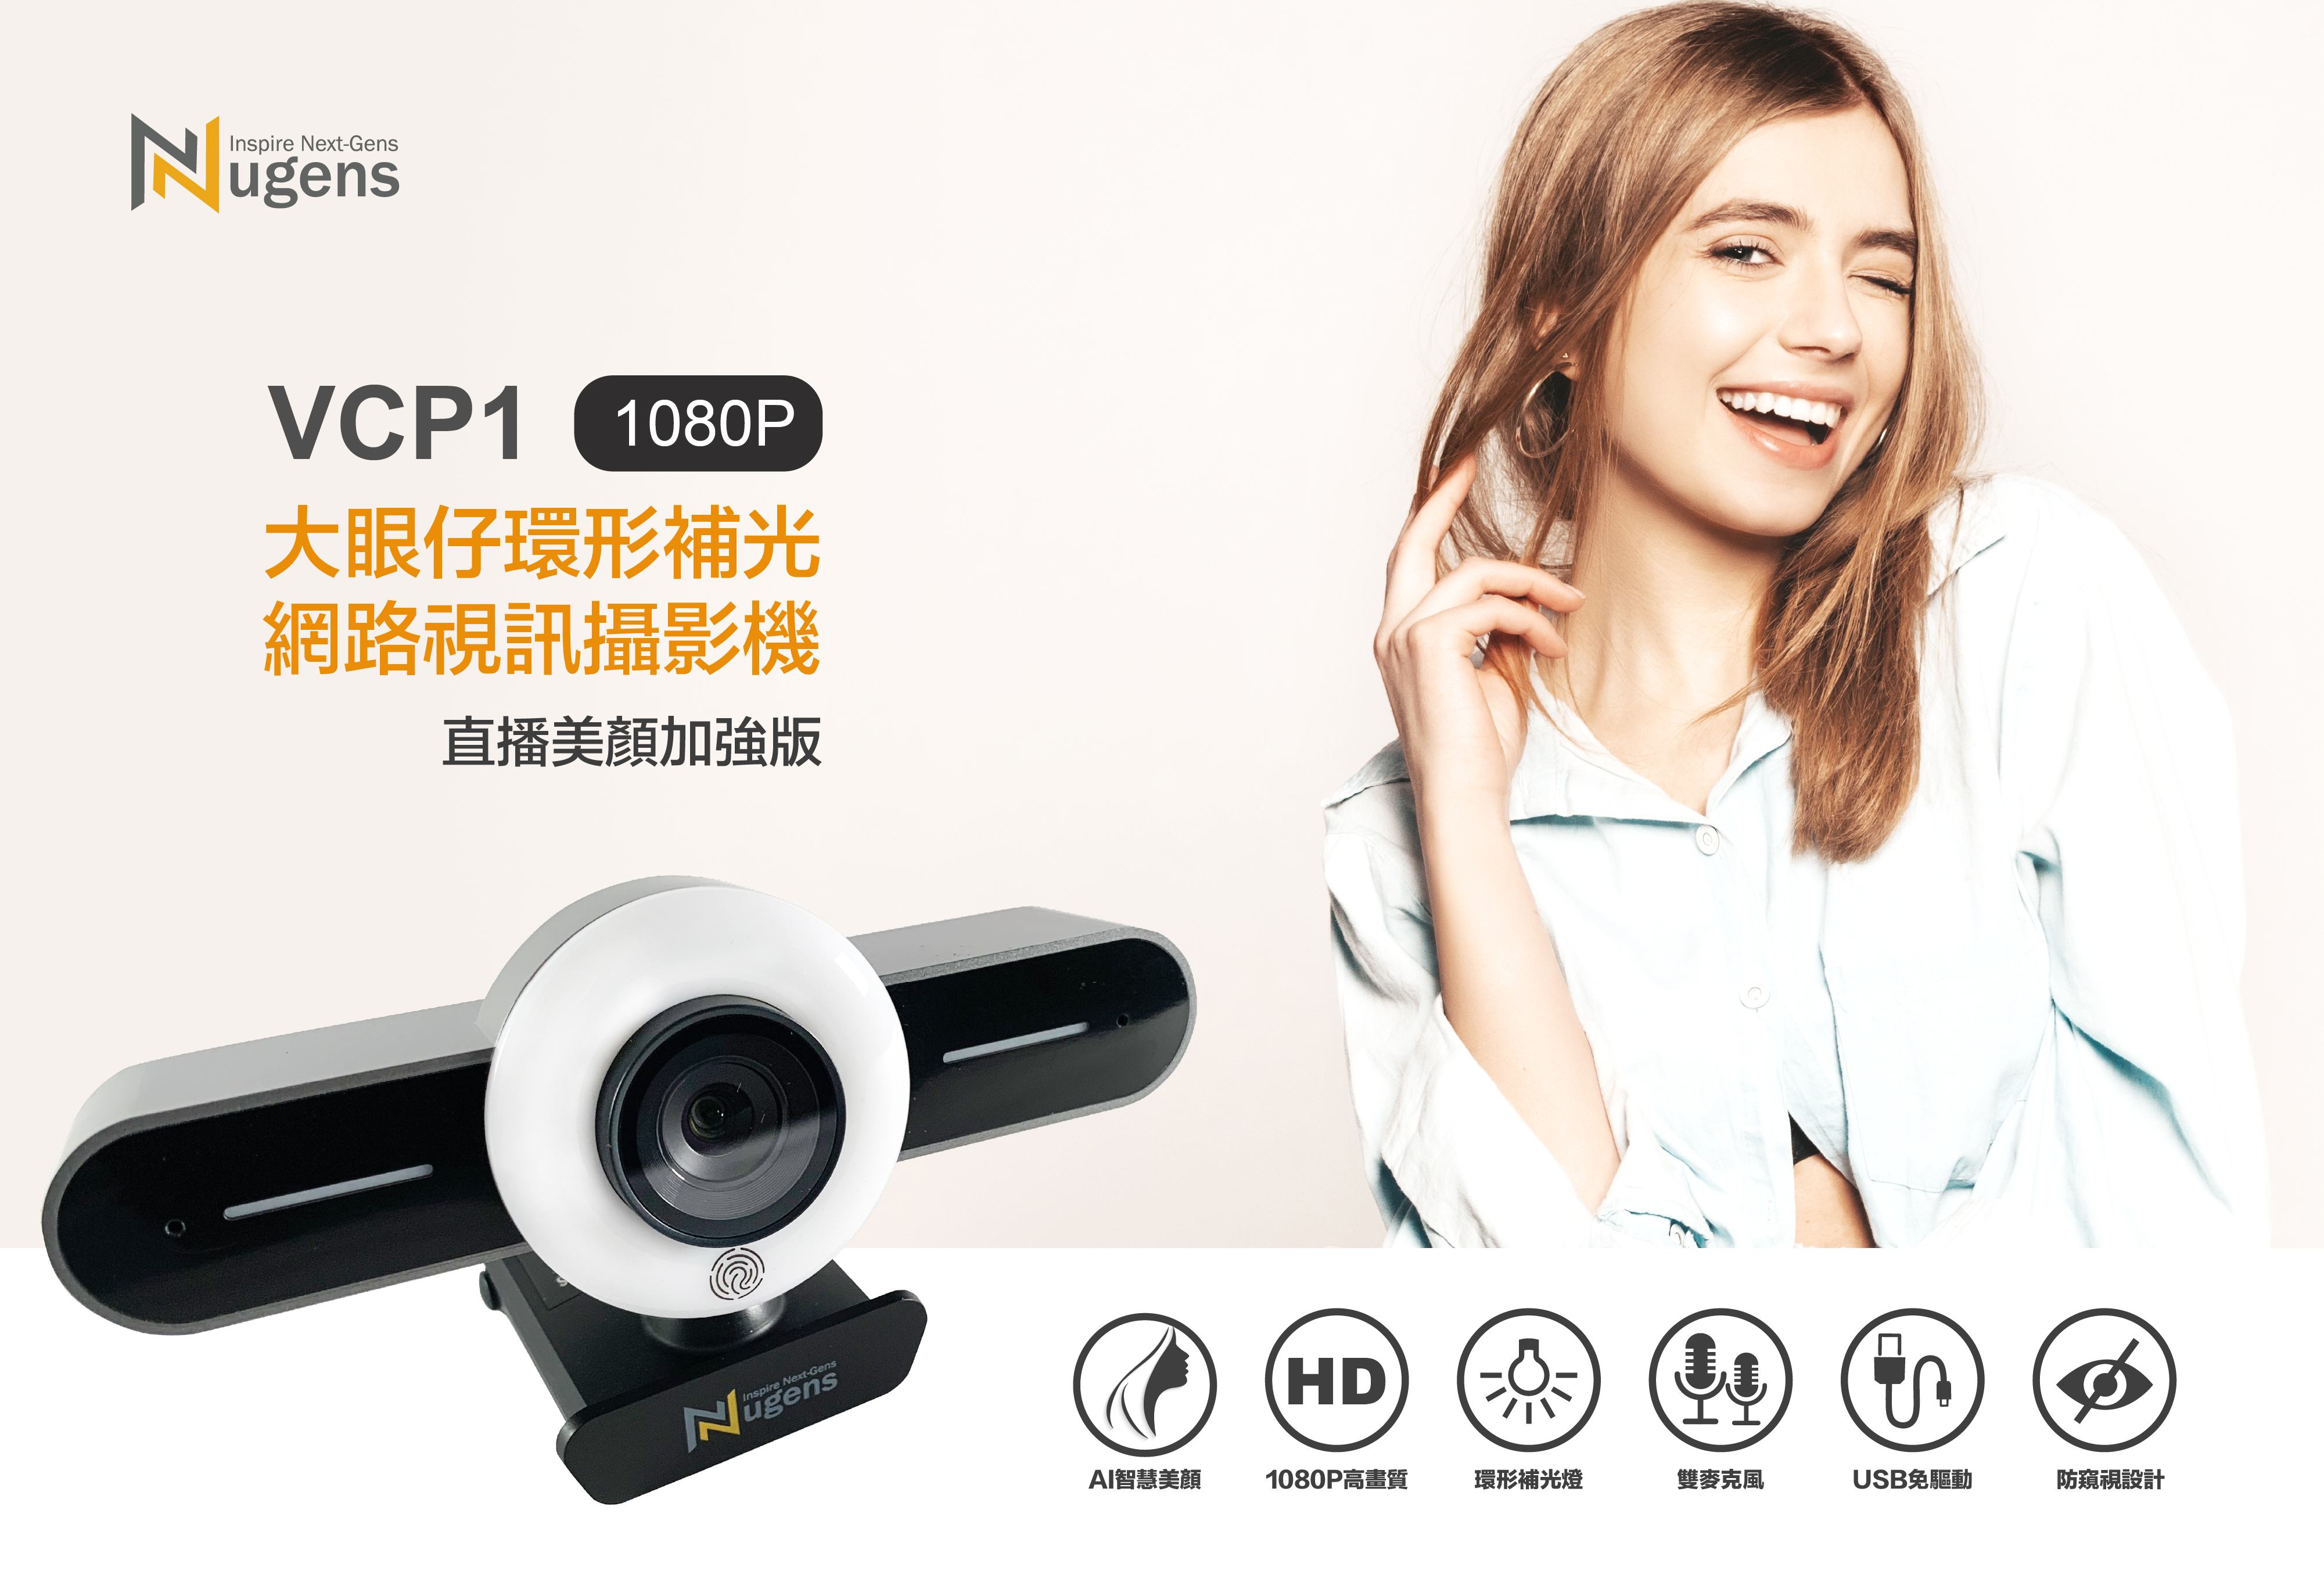 VCP1 大眼仔環形補光網路視訊攝影機